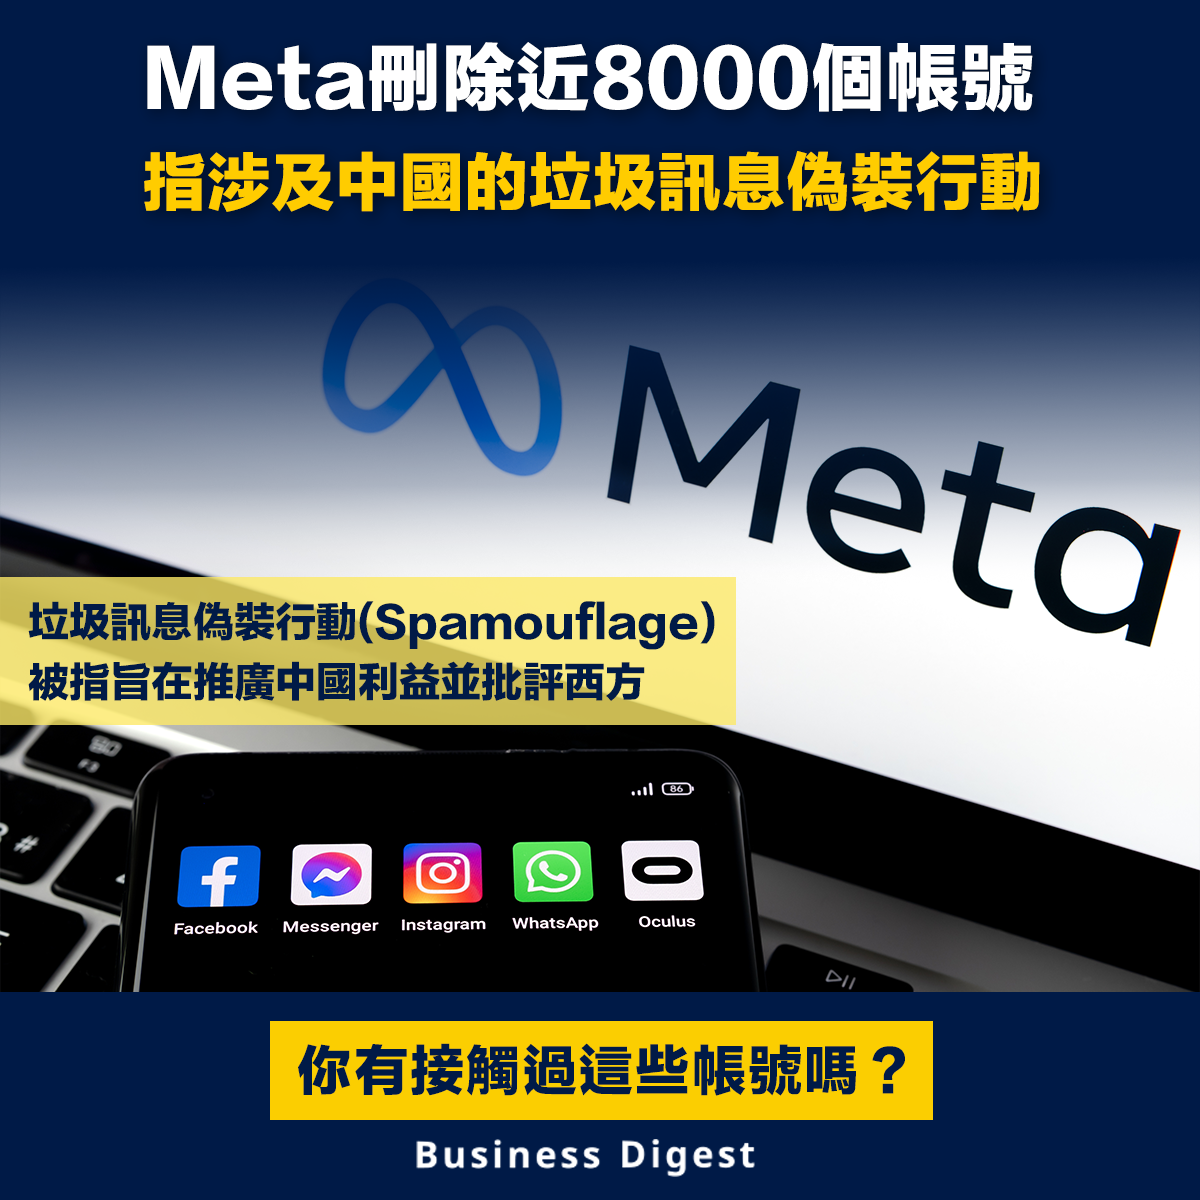 【垃圾訊息偽裝】Meta刪除近8000個帳號 指涉及中國的垃圾訊息偽裝行動